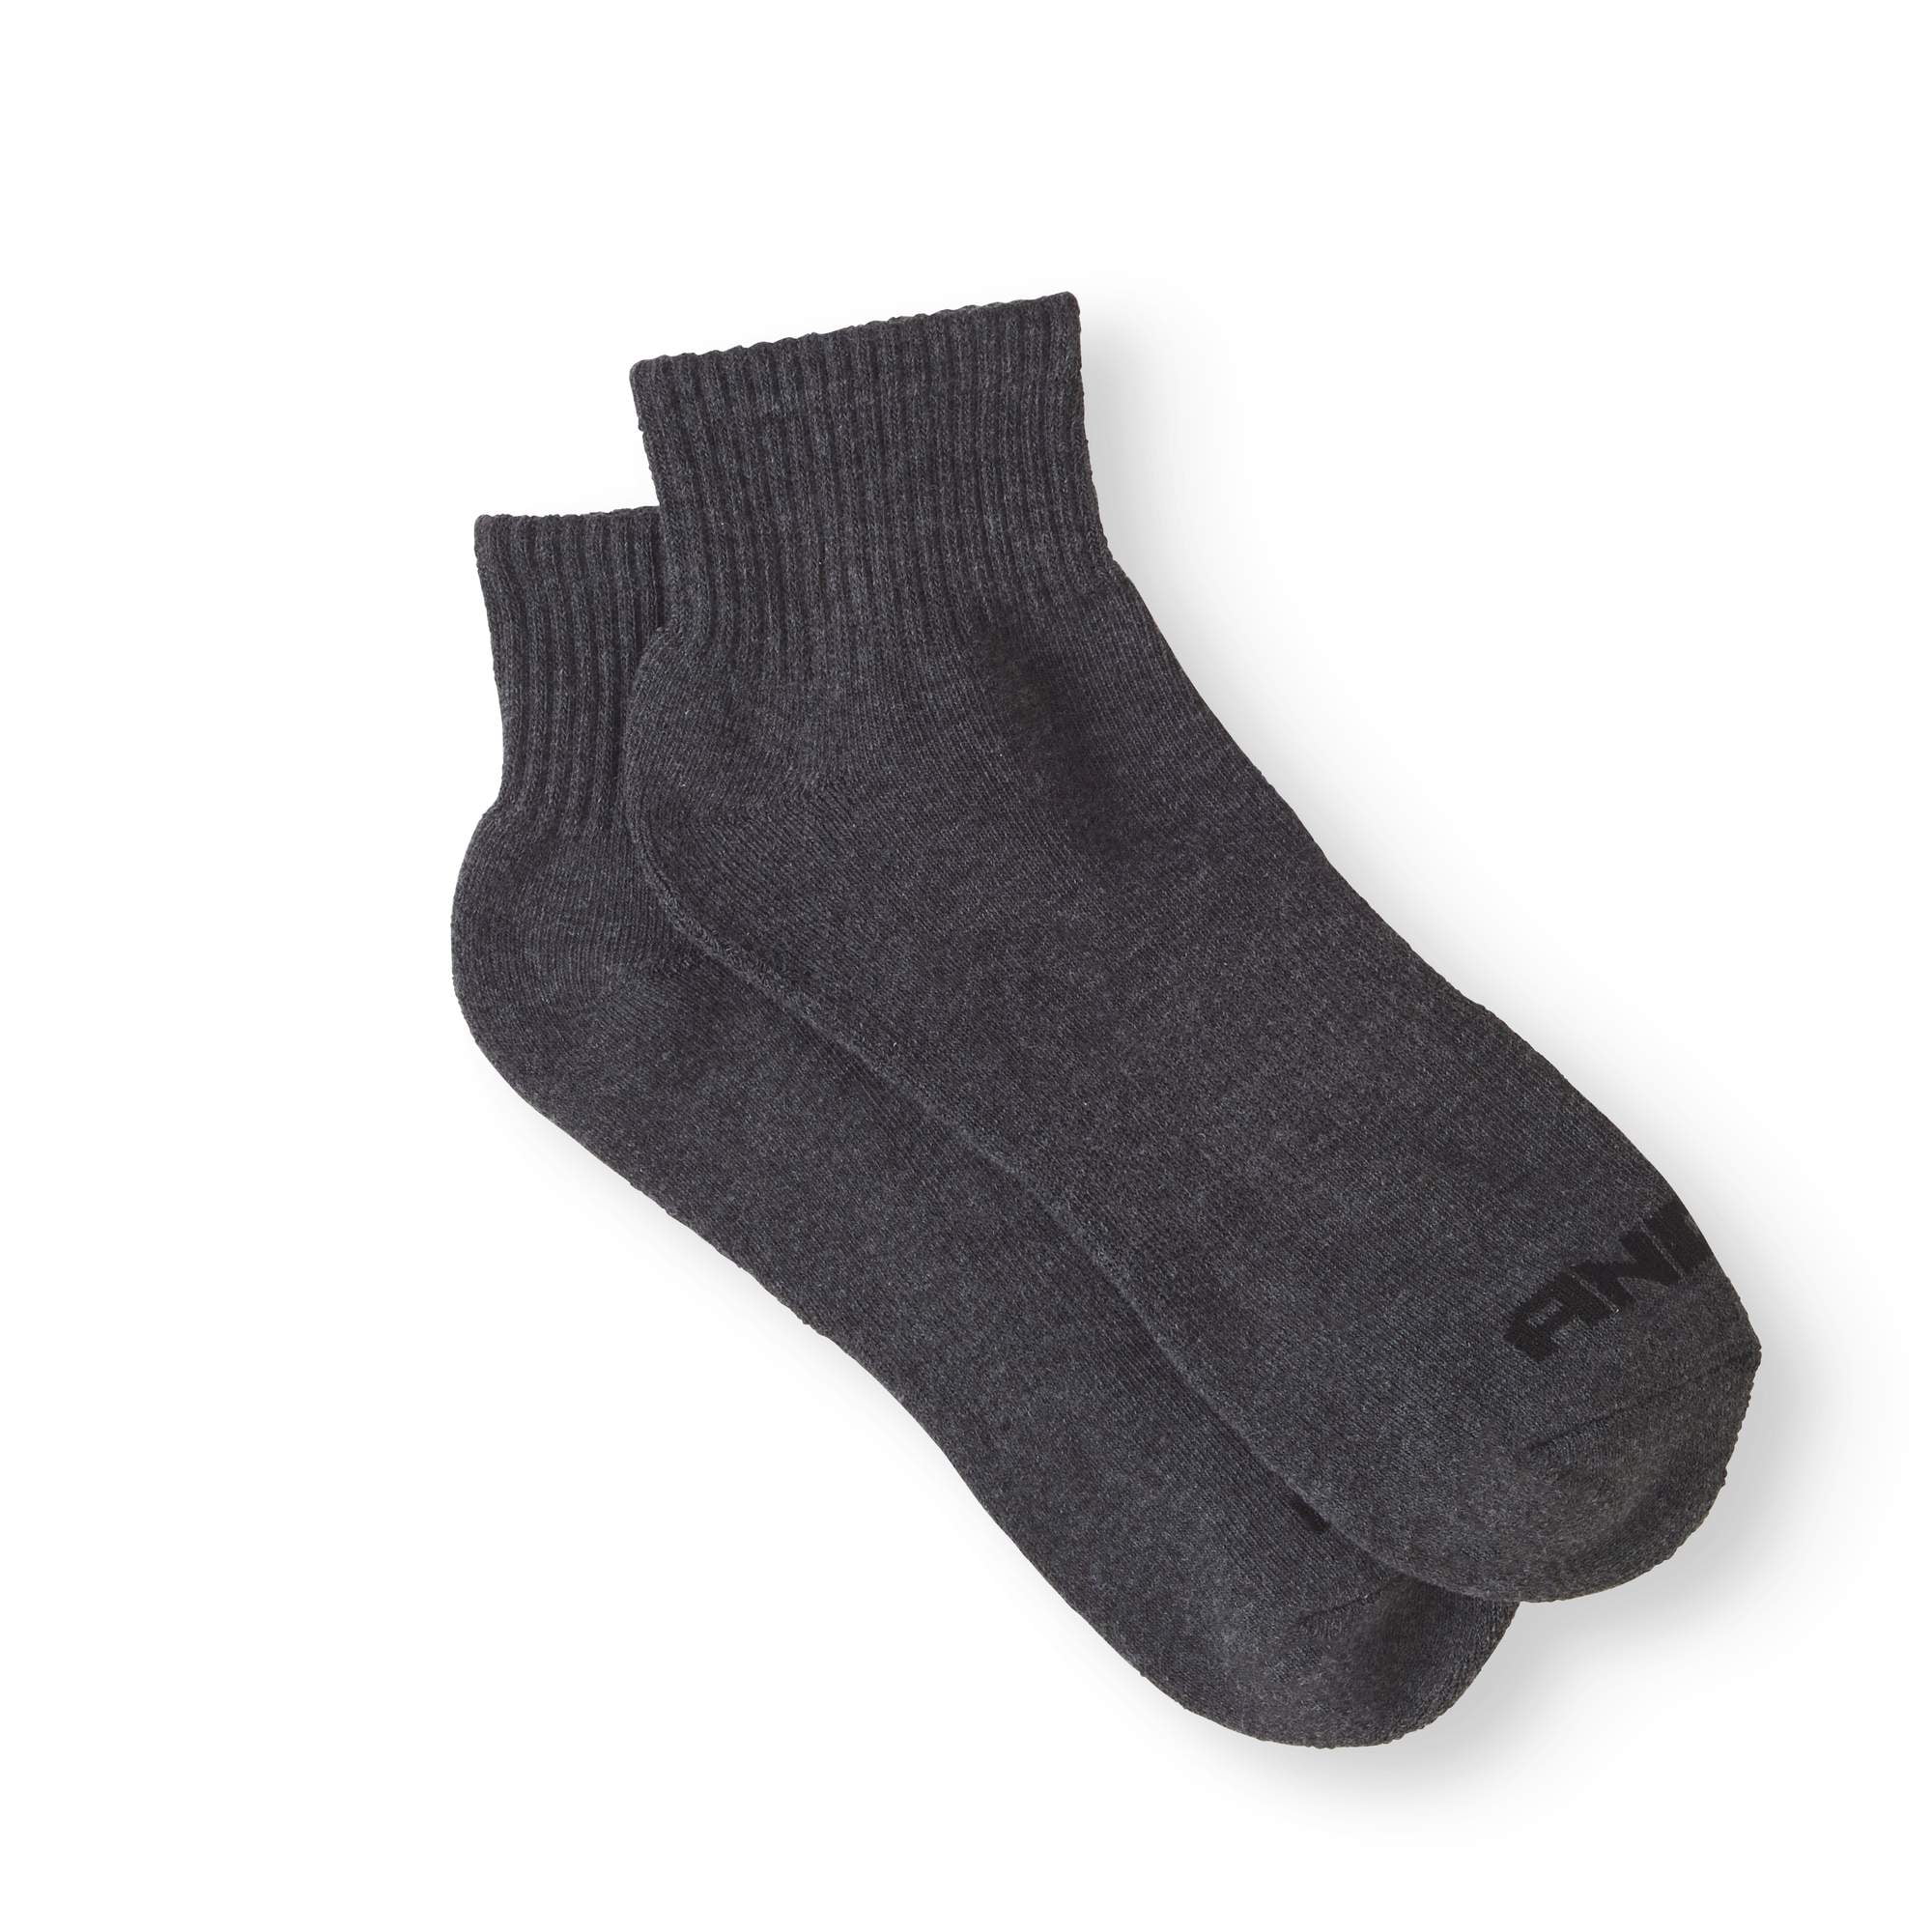 AND1 - AND1 Quarter Cut Men's Socks, 12 Pack - Walmart.com - Walmart.com